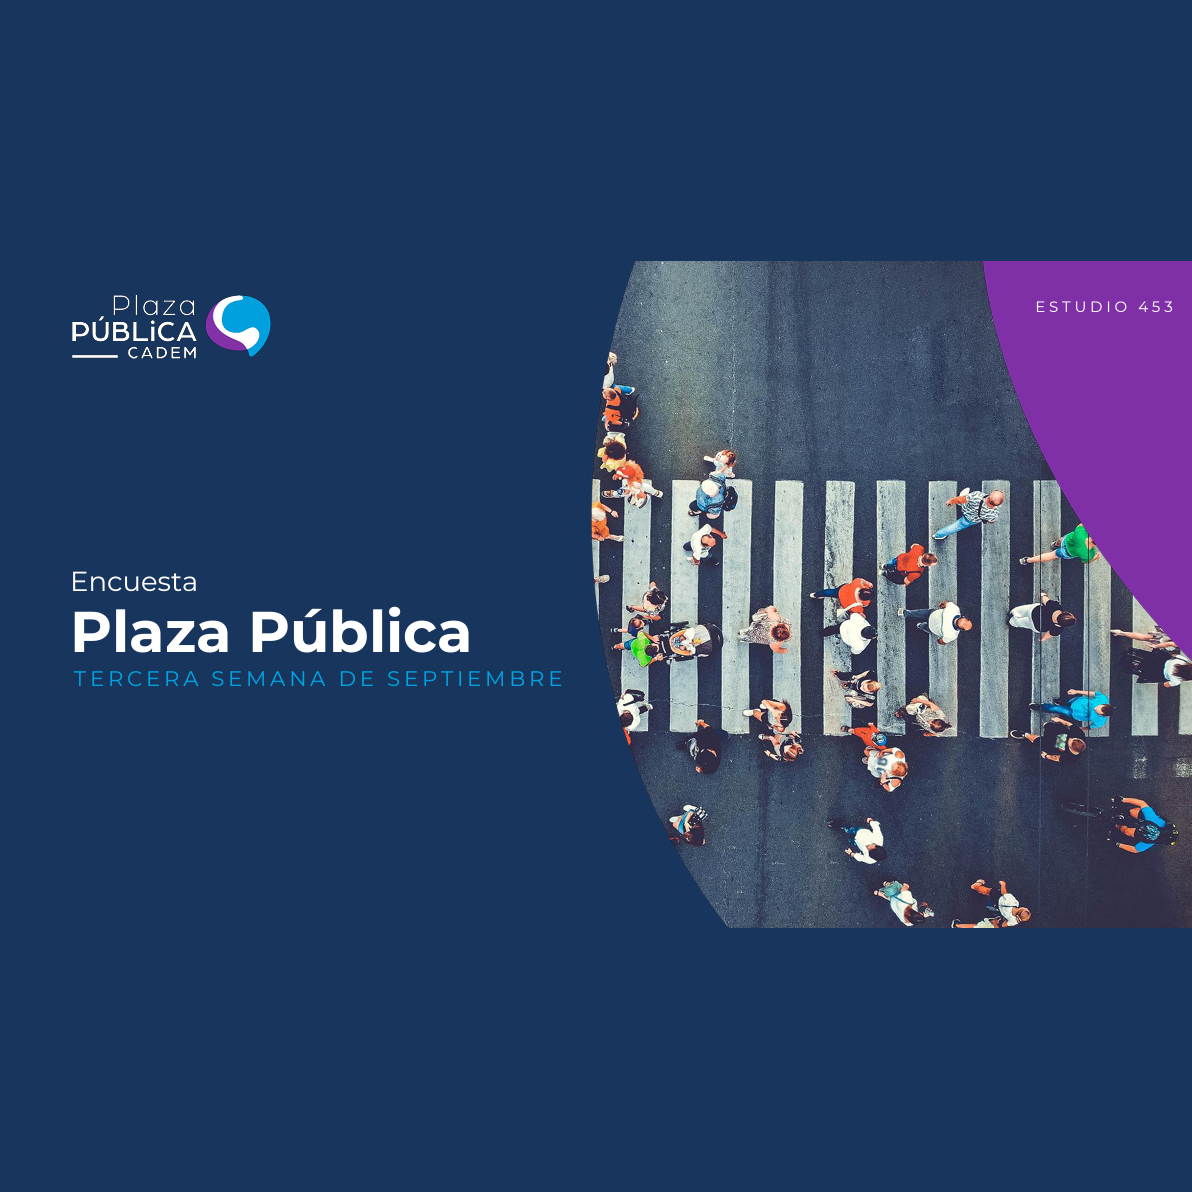 Encuesta Plaza Pública – Tercera semana de septiembre